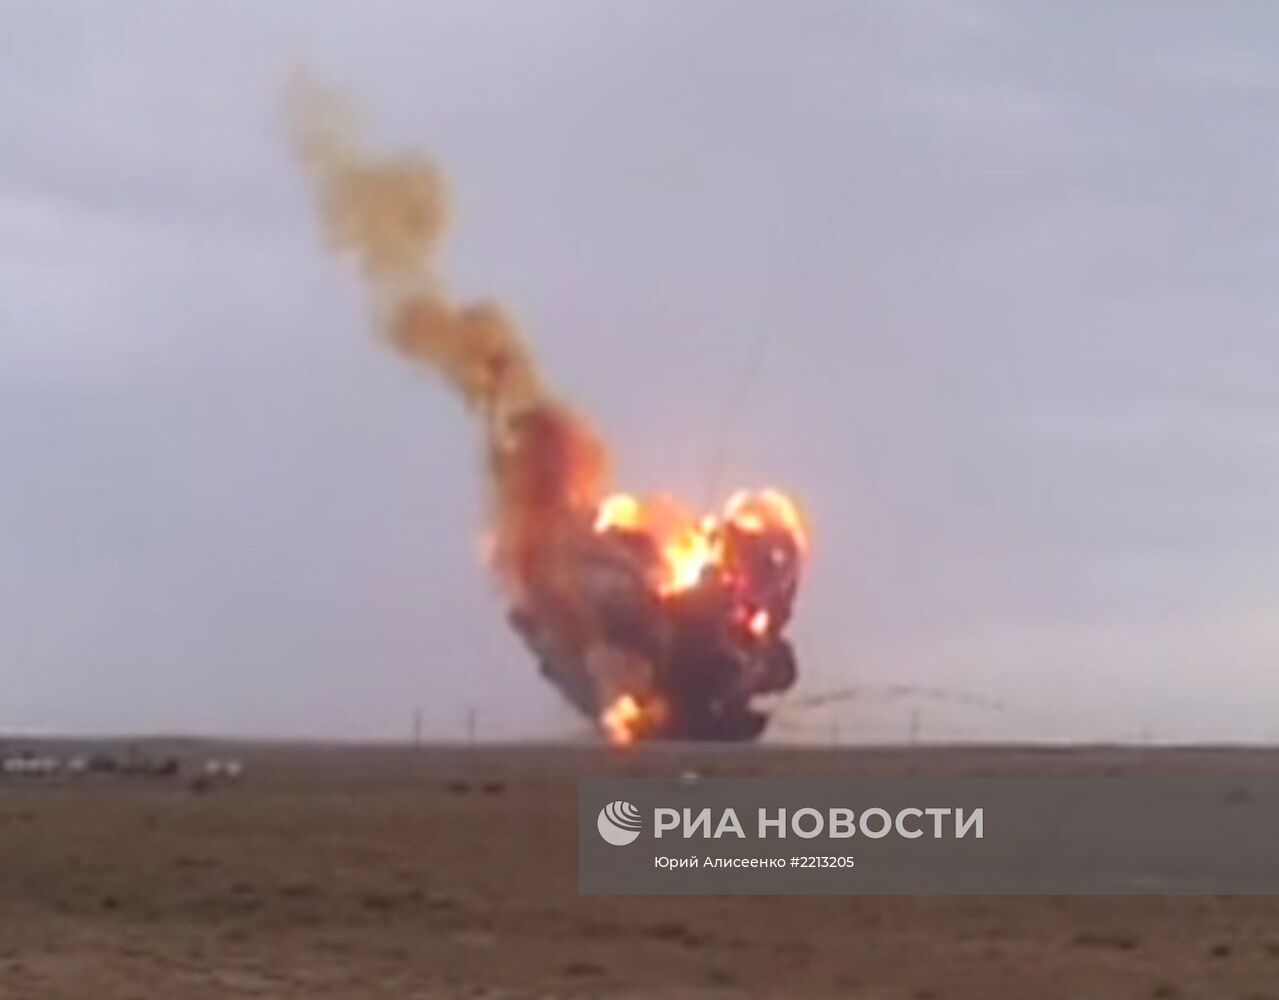 Ракета-носитель "Протон-М" упала и взорвалась после старта